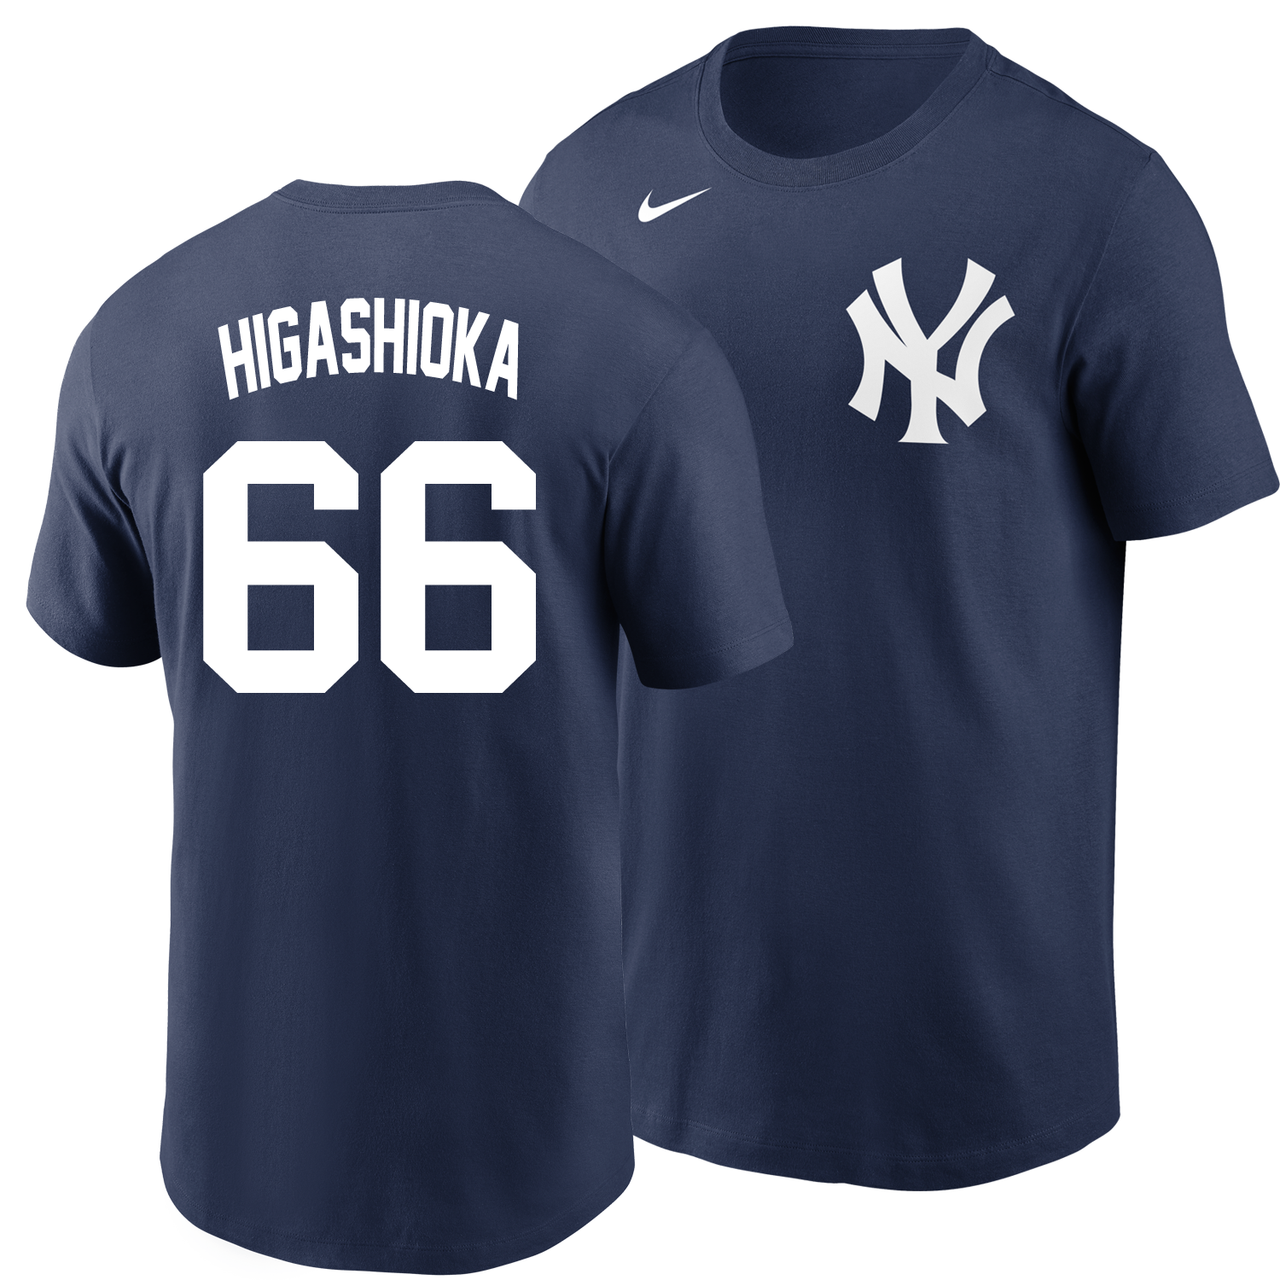 Giancarlo Stanton New York Yankees Nike Toddler Player Name & Number T-Shirt  - Navy